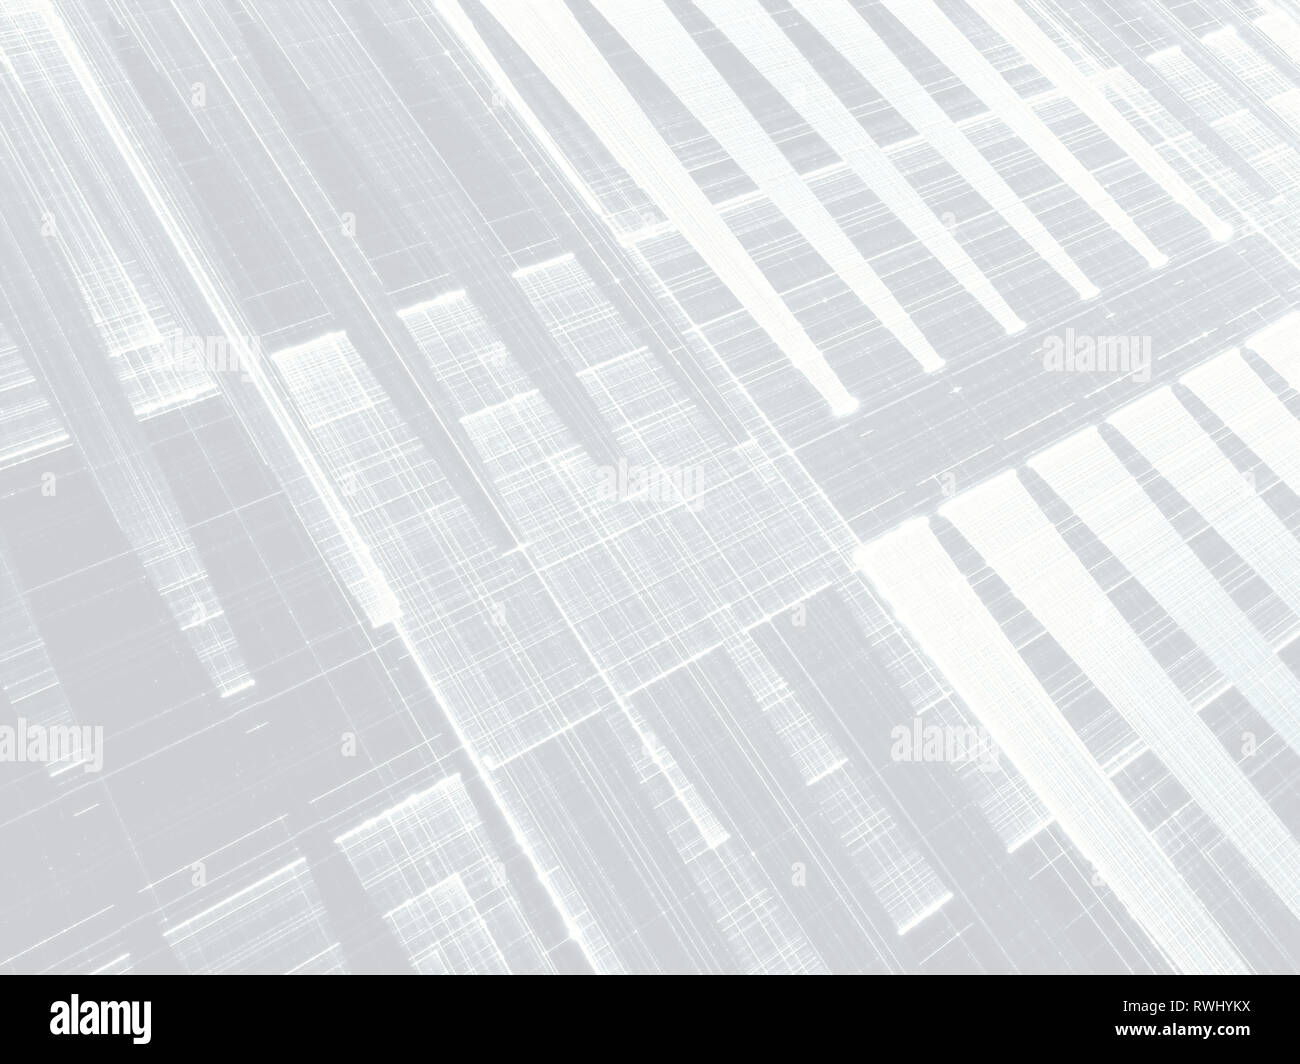 Zusammenfassung Hintergrund mit diagonalen Raster - digital erzeugten Bild Stockfoto